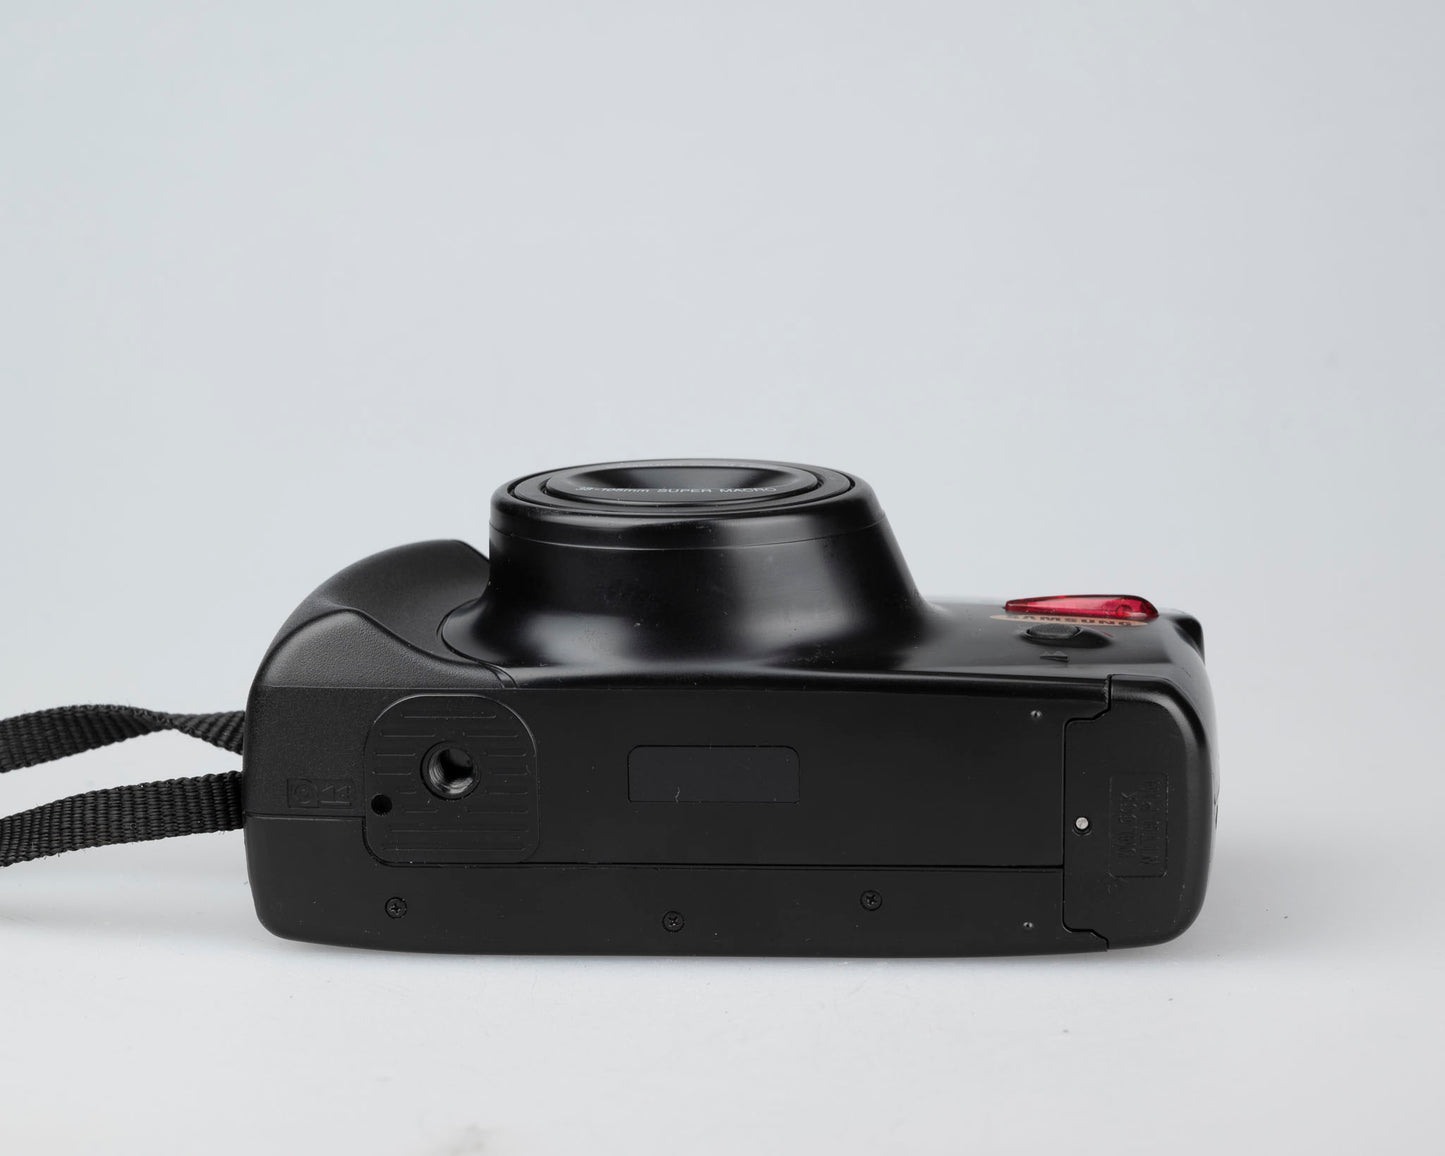 Samsung AF Zoom 1050 35mm camera (serial 4K72743)